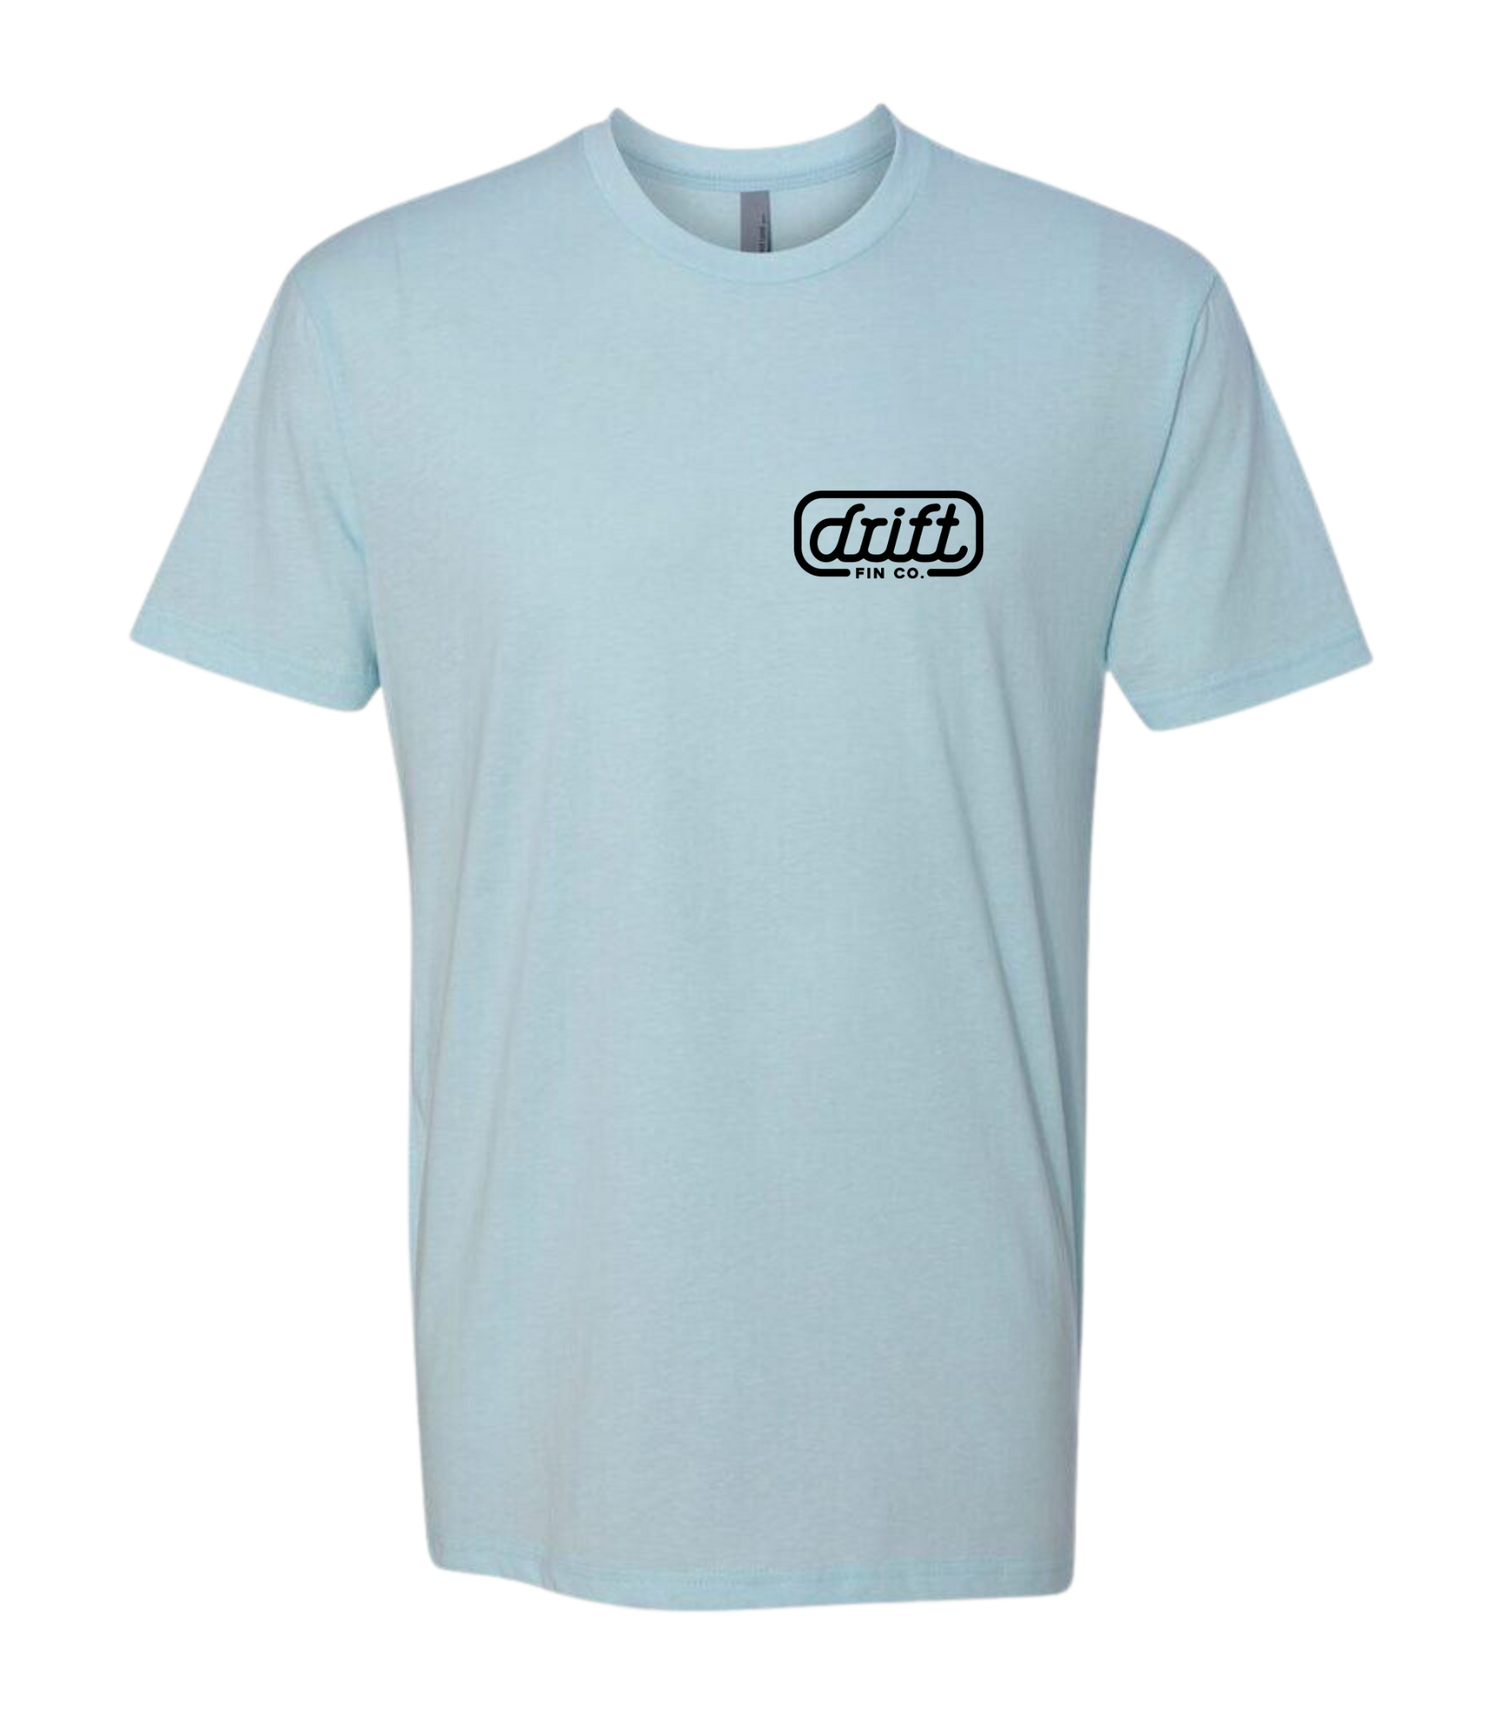 Drift Fin Co. T-Shirt